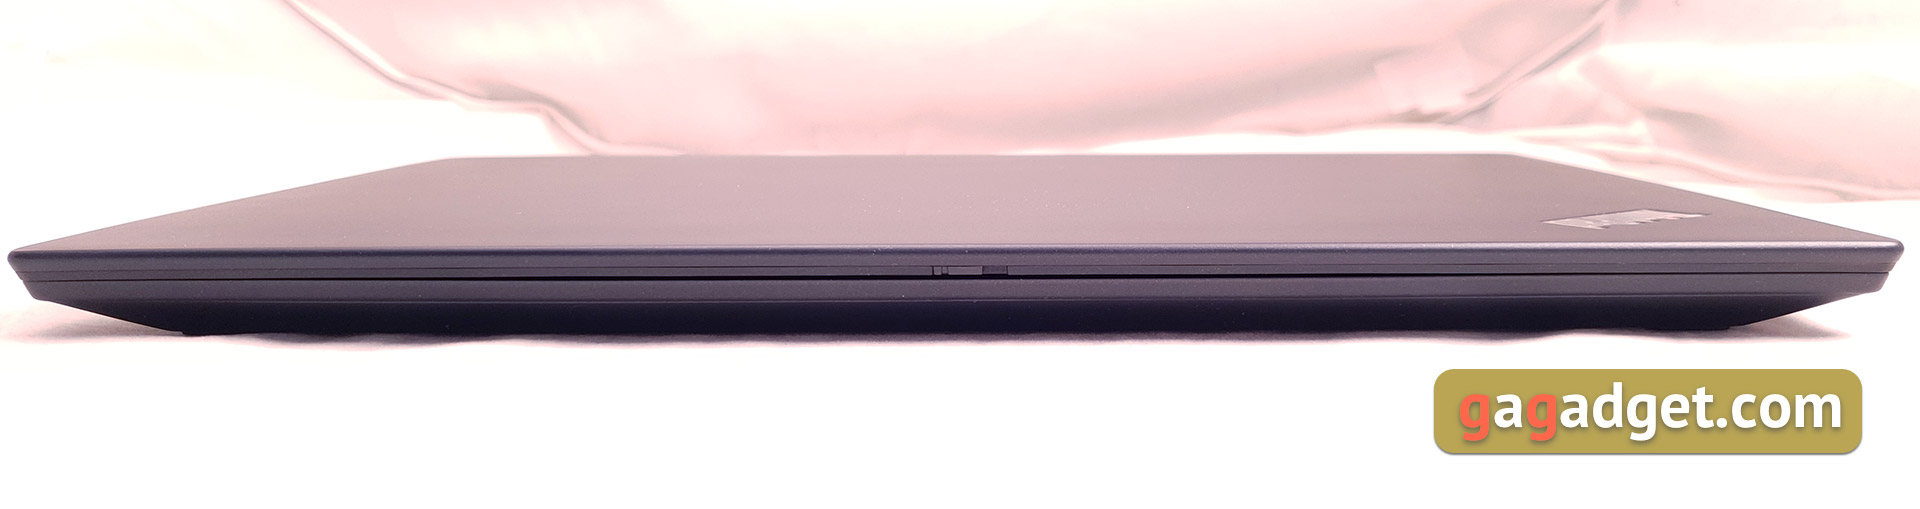 Обзор ноутбука Lenovo ThinkPad T490s: усердный работник-12